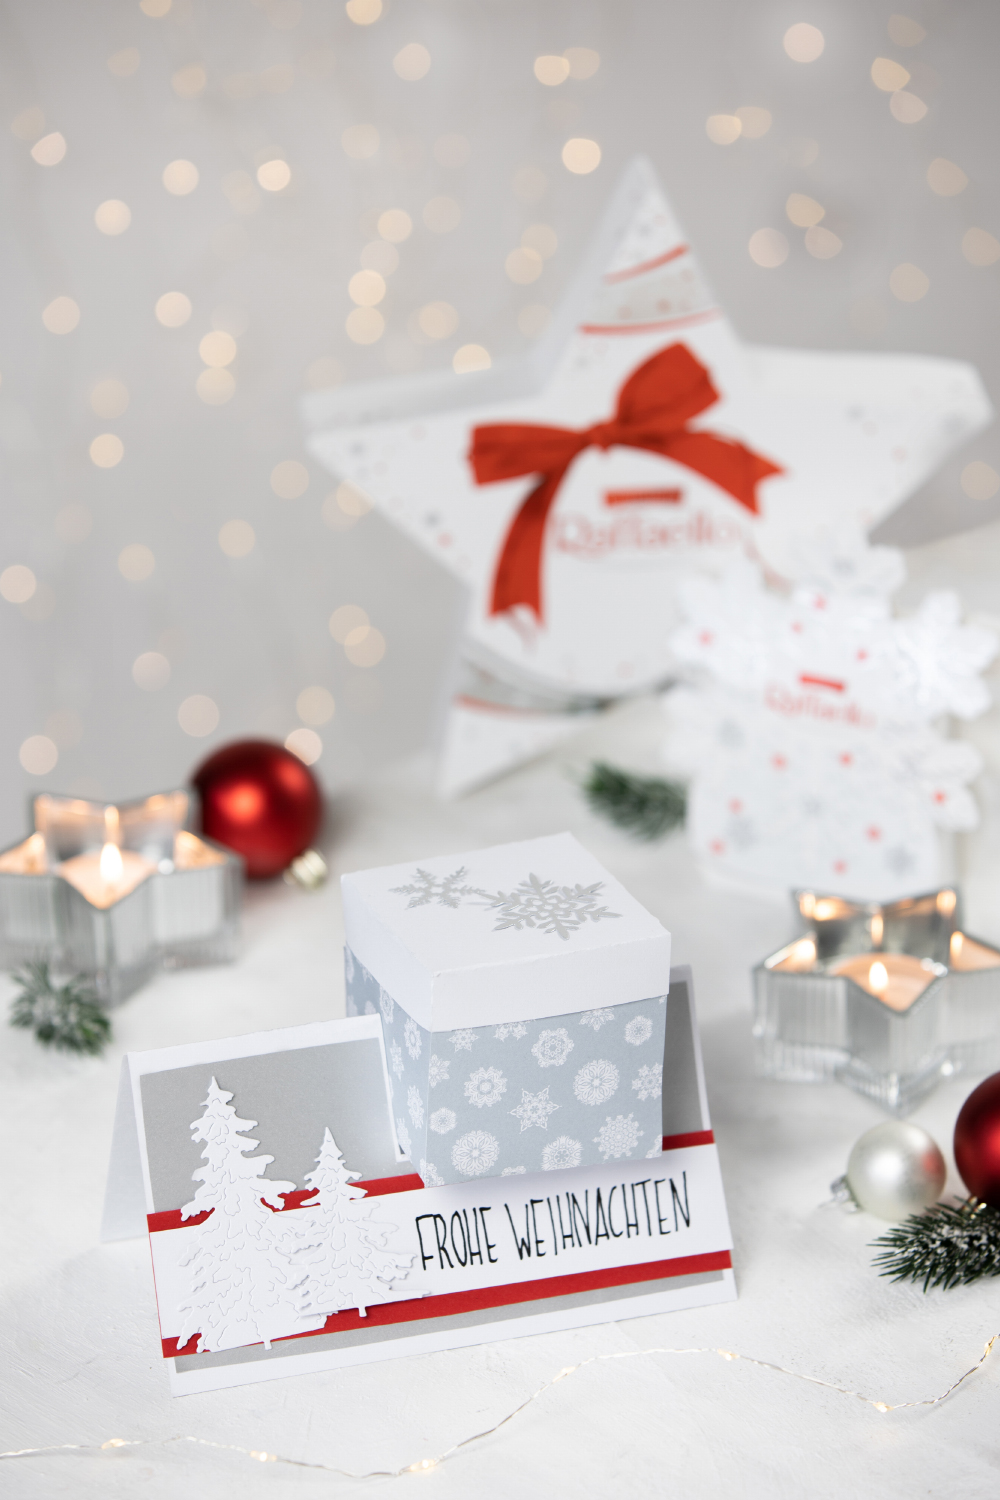 DIY Explosionsbox und Grußkarte mit Überraschungsbox mit Raffaello #14TageWeihnachten